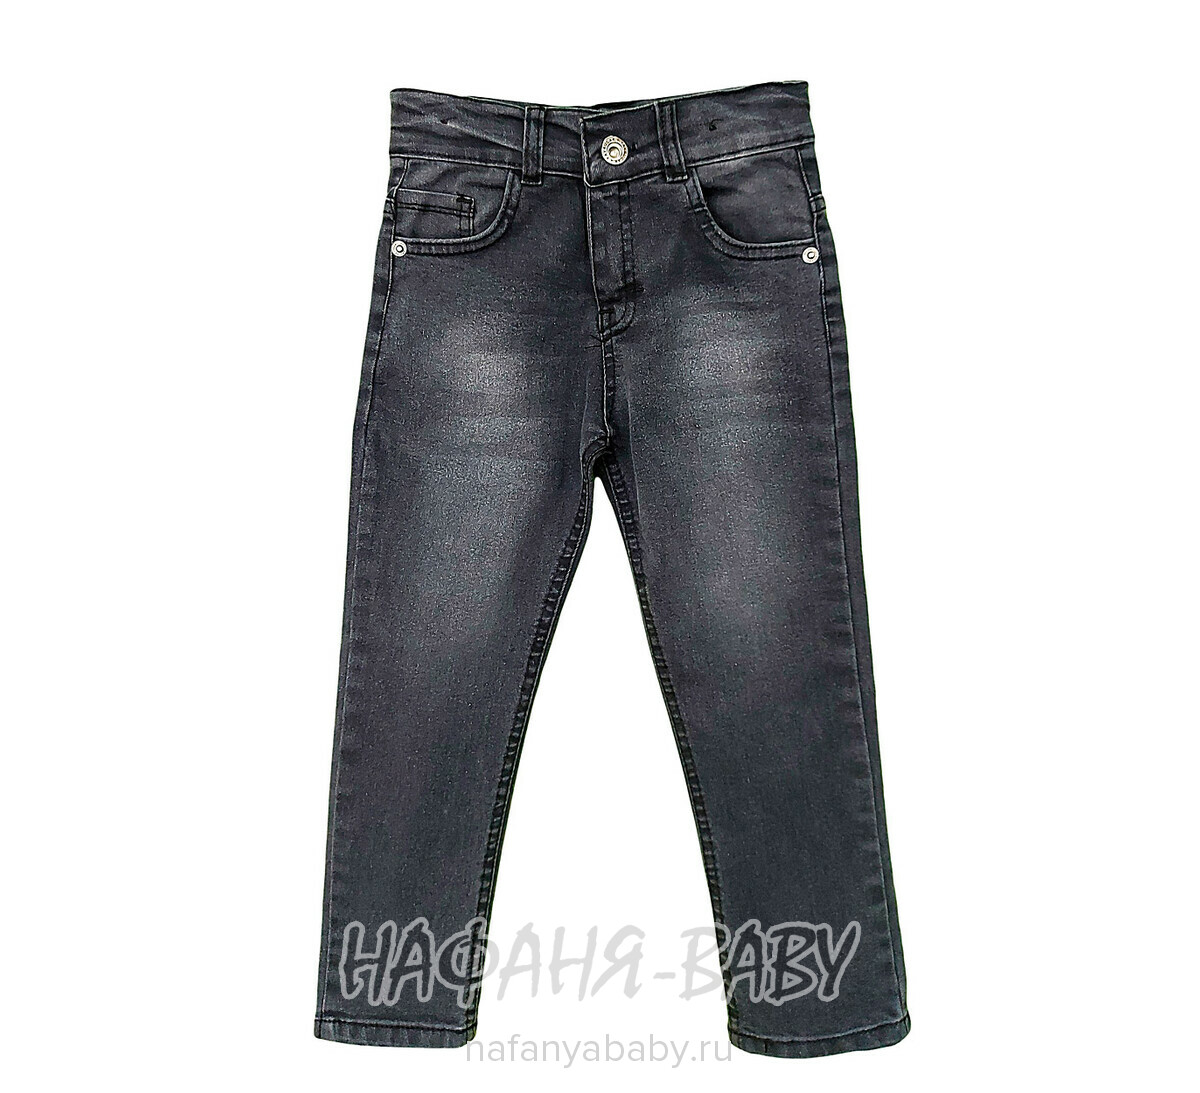 Детские джинсы YAVRUCAK арт: 4202 для мальчика от 3 до 7 лет, цвет черный, оптом Турция